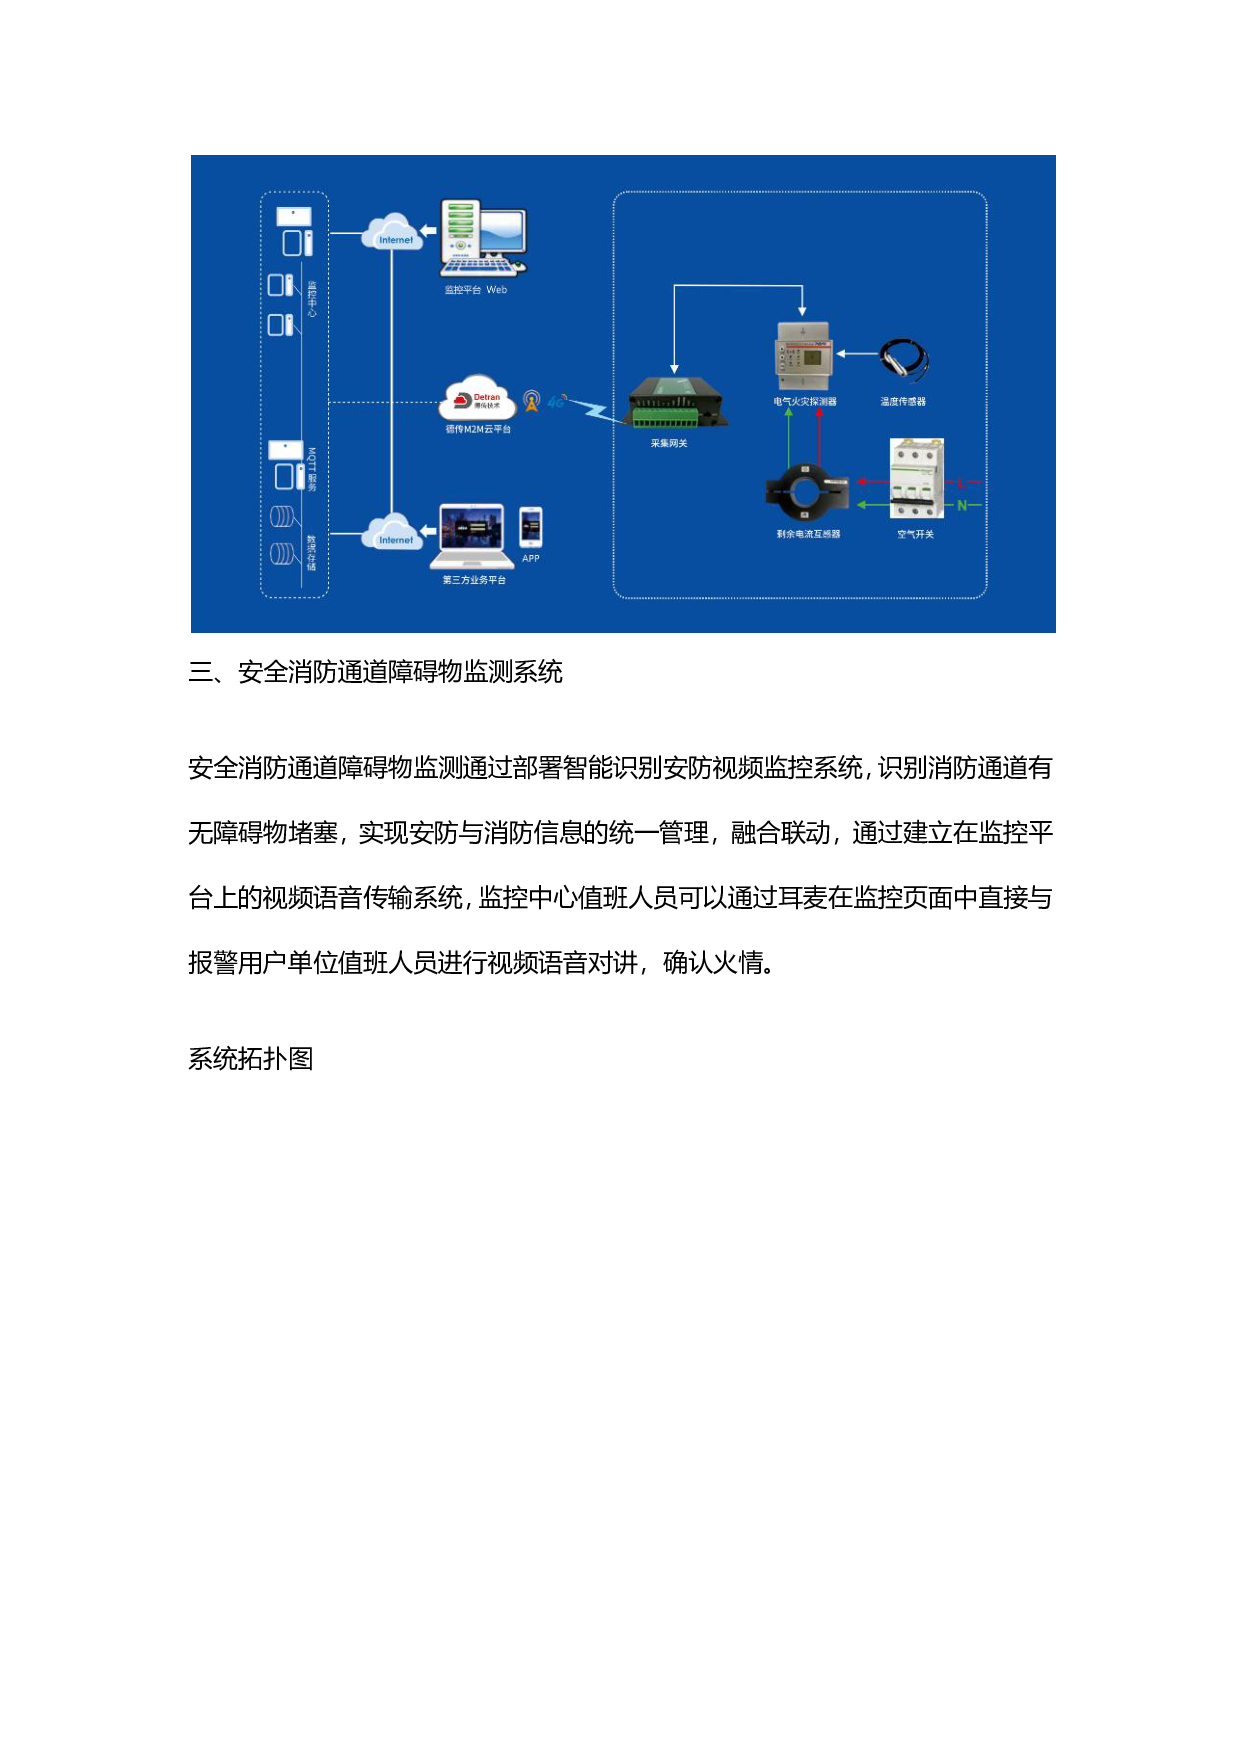 德传技术仓储安全在线监测系统方案图片